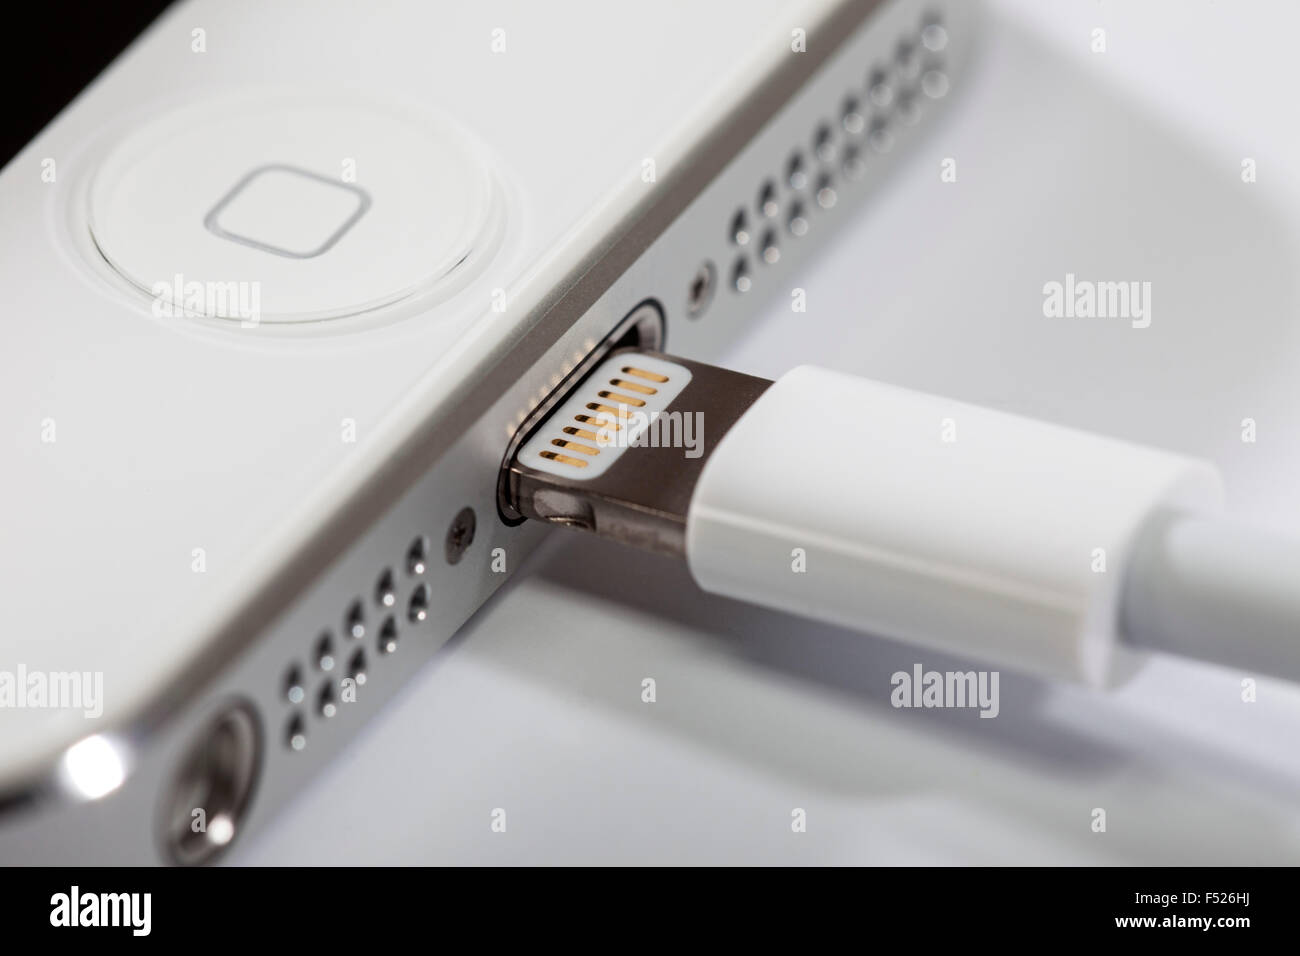 Apple iPhone 5, connecteur Lightning, connecteur Lightning câble USB,  détail Photo Stock - Alamy